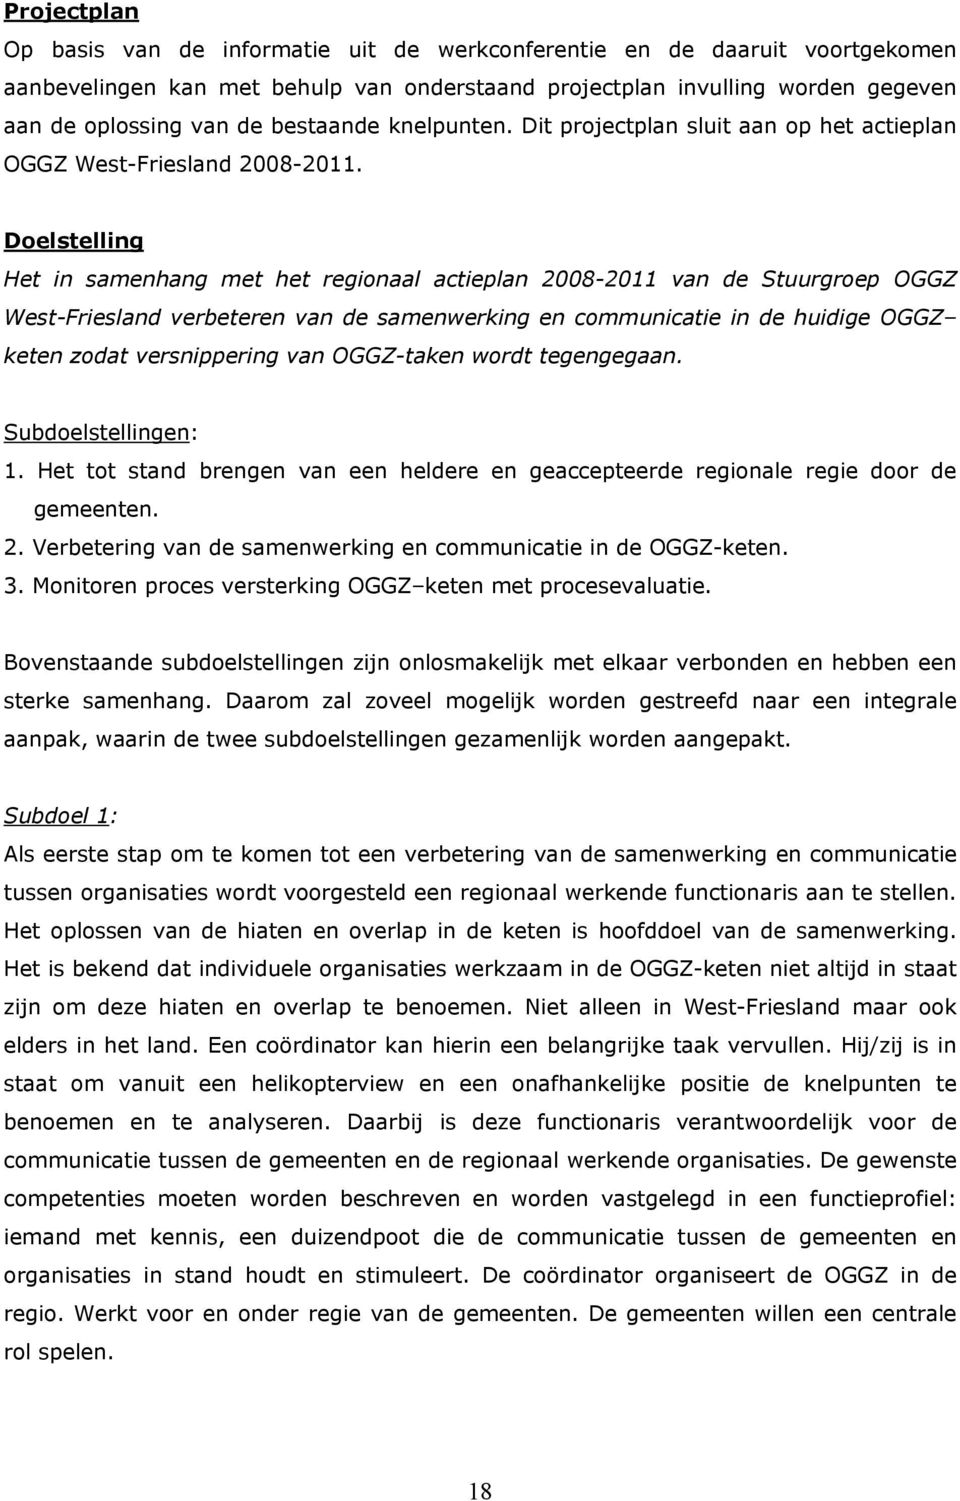 Doelstelling Het in samenhang met het regionaal actieplan 2008-2011 van de Stuurgroep OGGZ West-Friesland verbeteren van de samenwerking en communicatie in de huidige OGGZ keten zodat versnippering